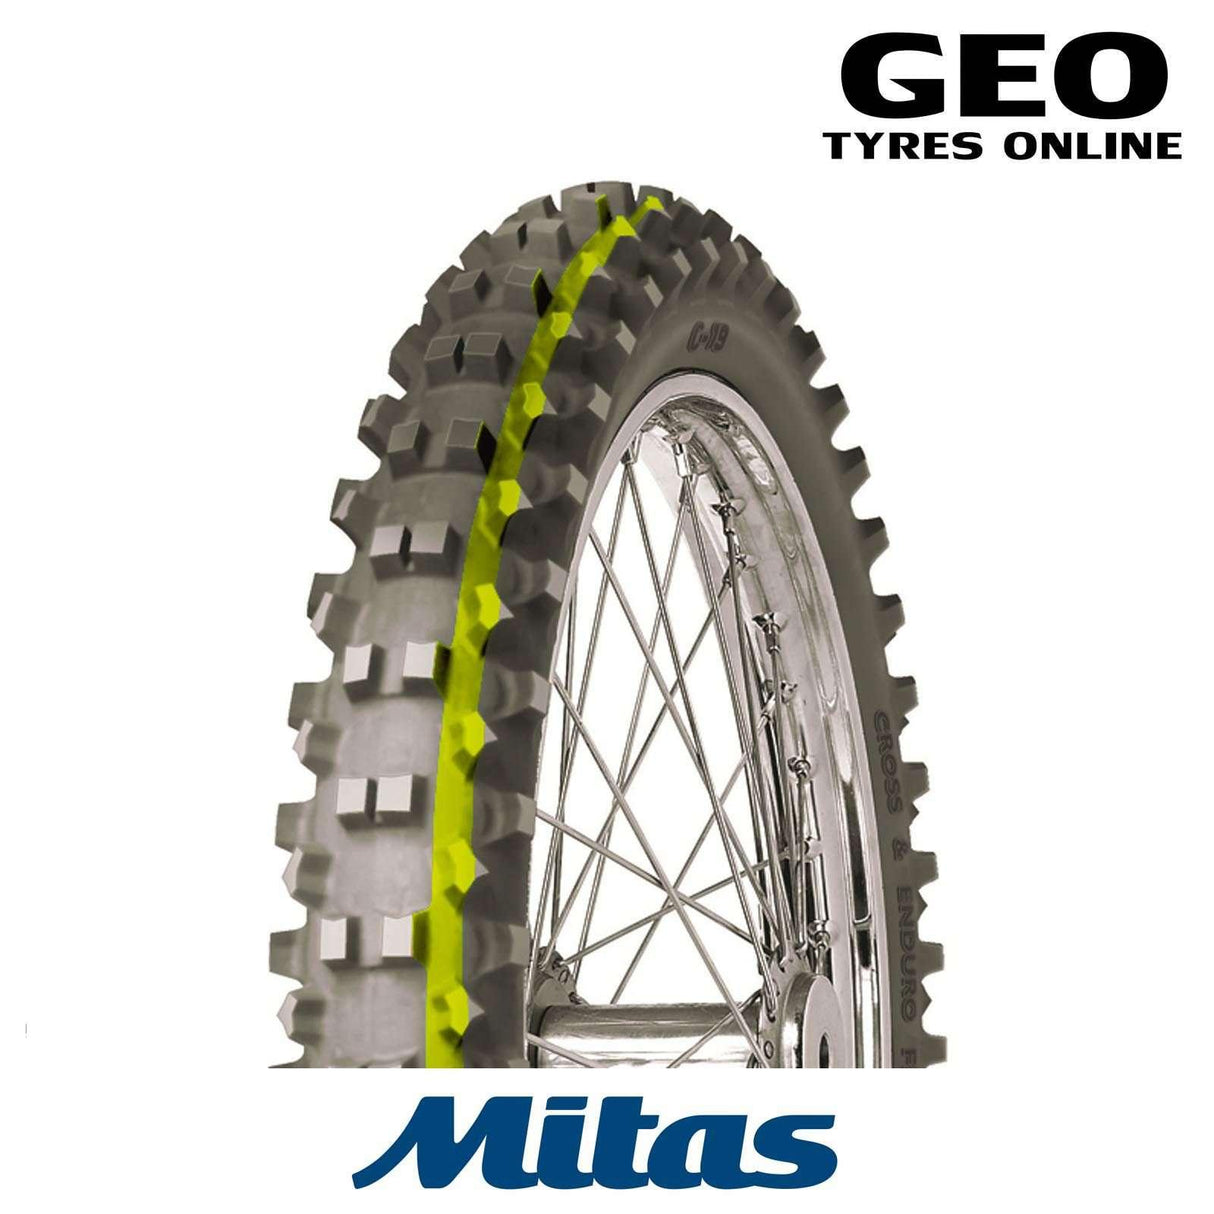 90/90-21 C19 Super Yellow Mitas Front Tyre - GEO Tyres Online